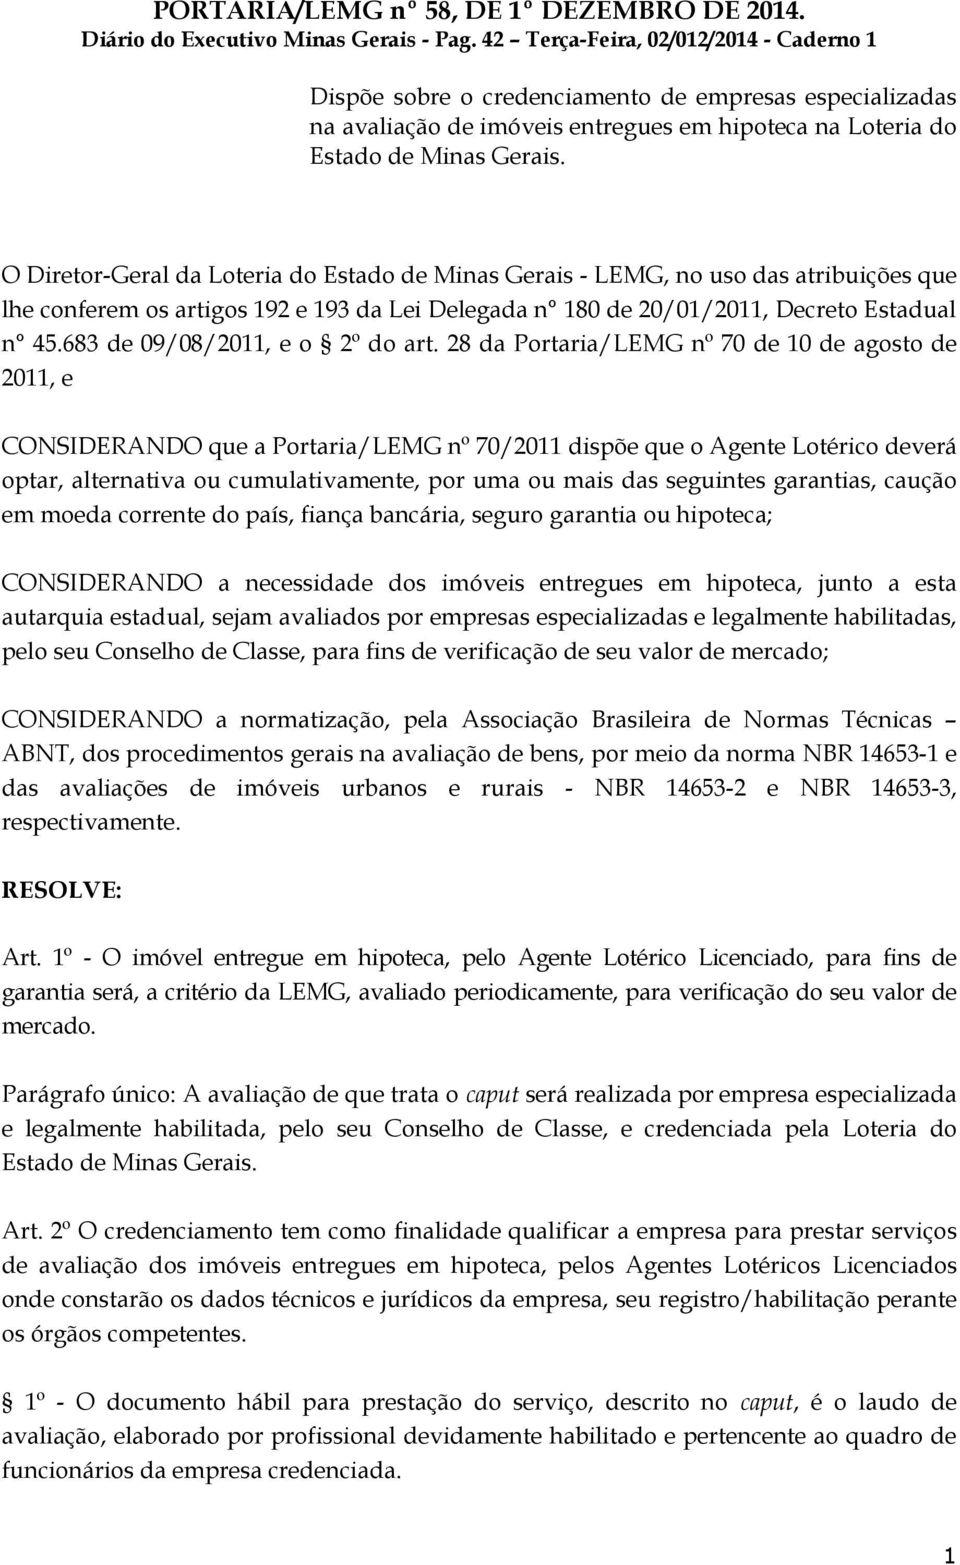 O Diretor-Geral da Loteria do Estado de Minas Gerais - LEMG, no uso das atribuições que lhe conferem os artigos 192 e 193 da Lei Delegada n 180 de 20/01/2011, Decreto Estadual n 45.